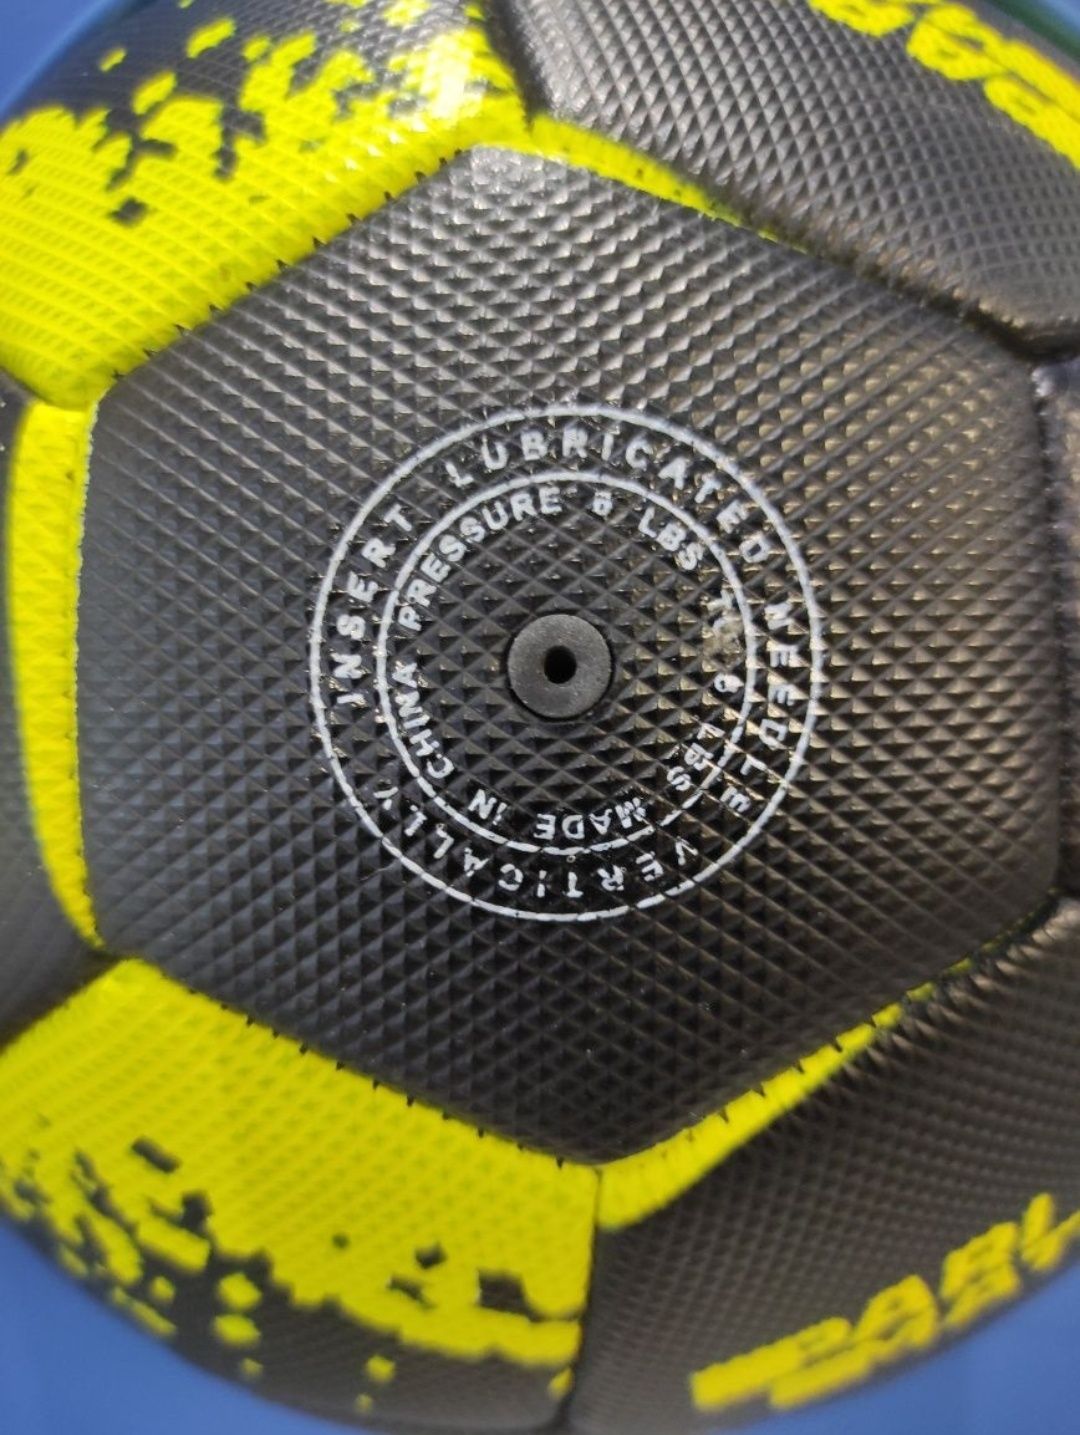 М'яч Мяч футбольный футбольний з логотипом Pari Match